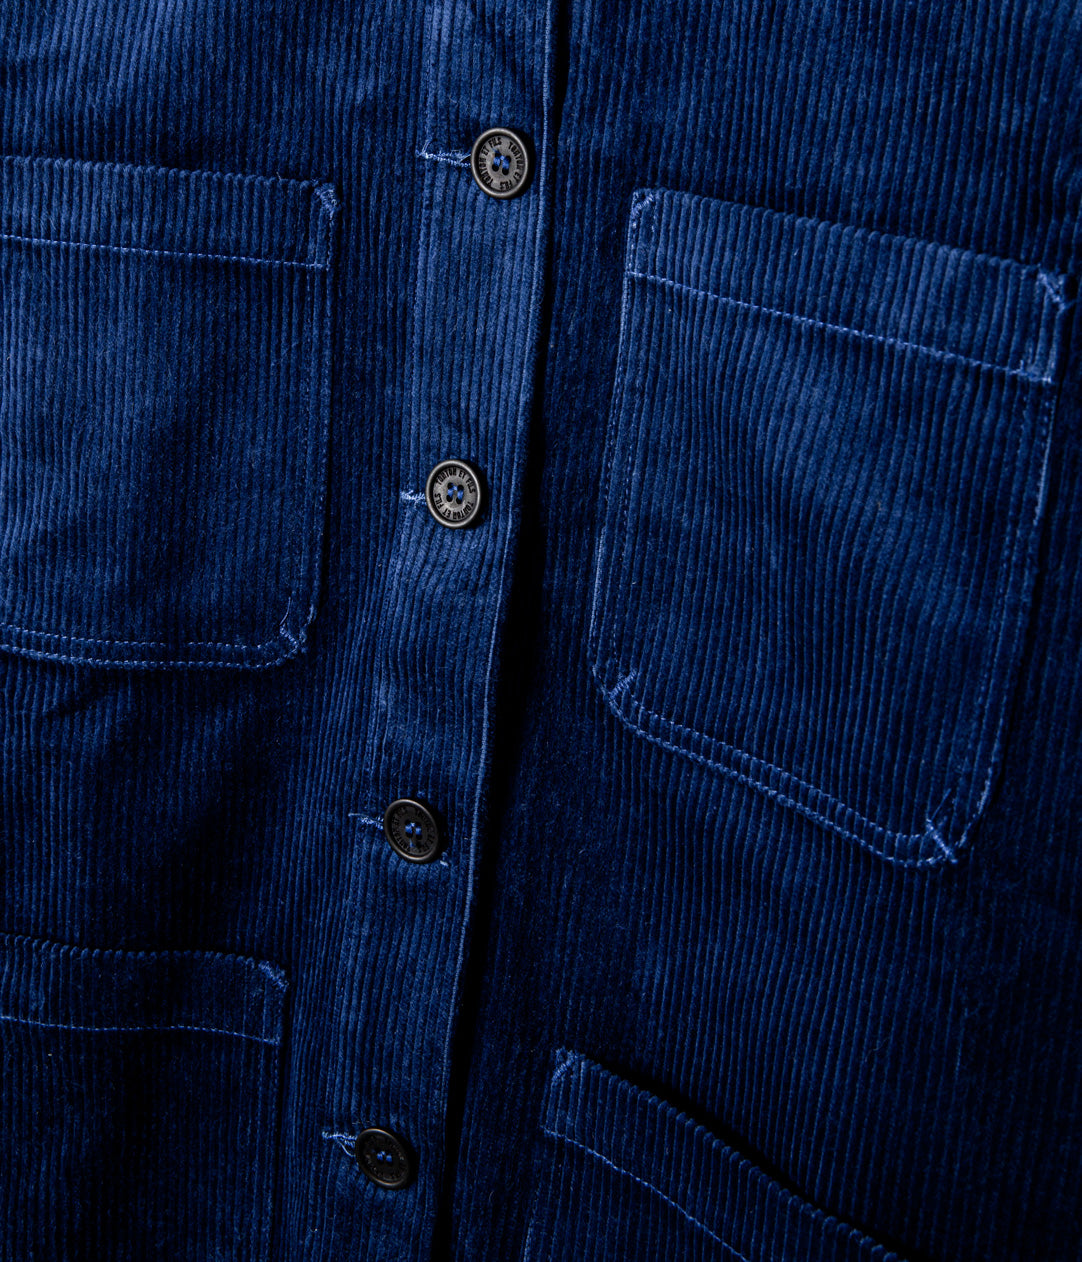 Tonton et Fils - La veste femme "L'Ouvrière" de l'Ouvrière Moderne - Velours côtelé bleu - Fabriquée en France - Vue sur la boutonnière